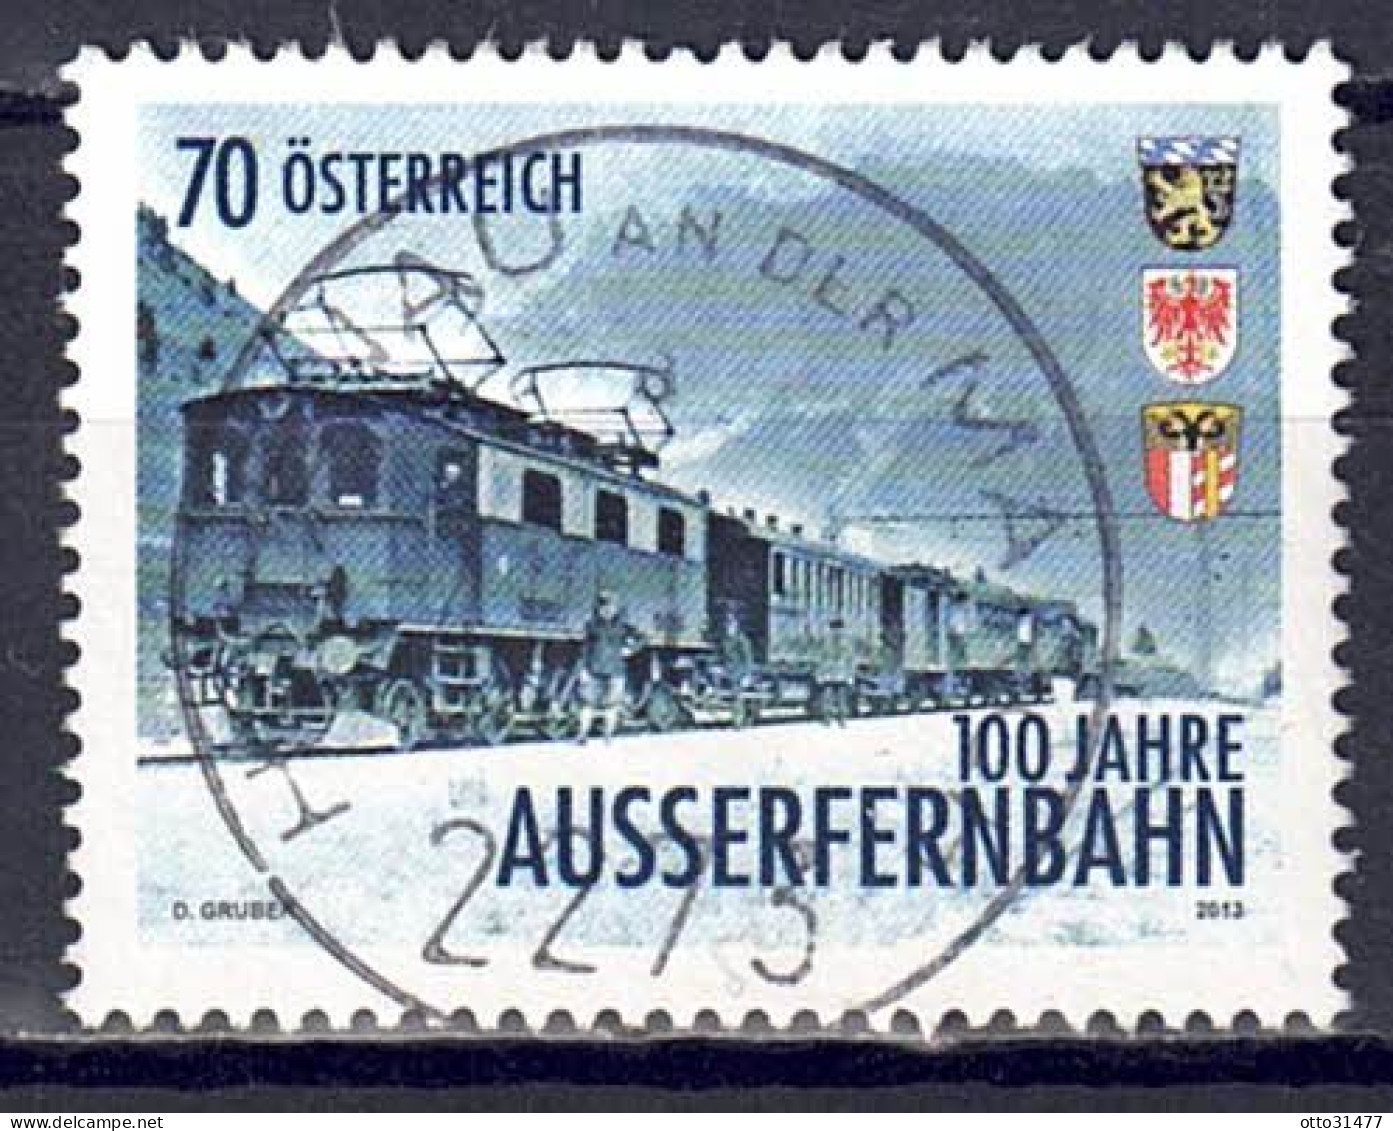 Österreich 2013 - Außerfernbahn, MiNr. 3086, Gestempelt / Used - Oblitérés